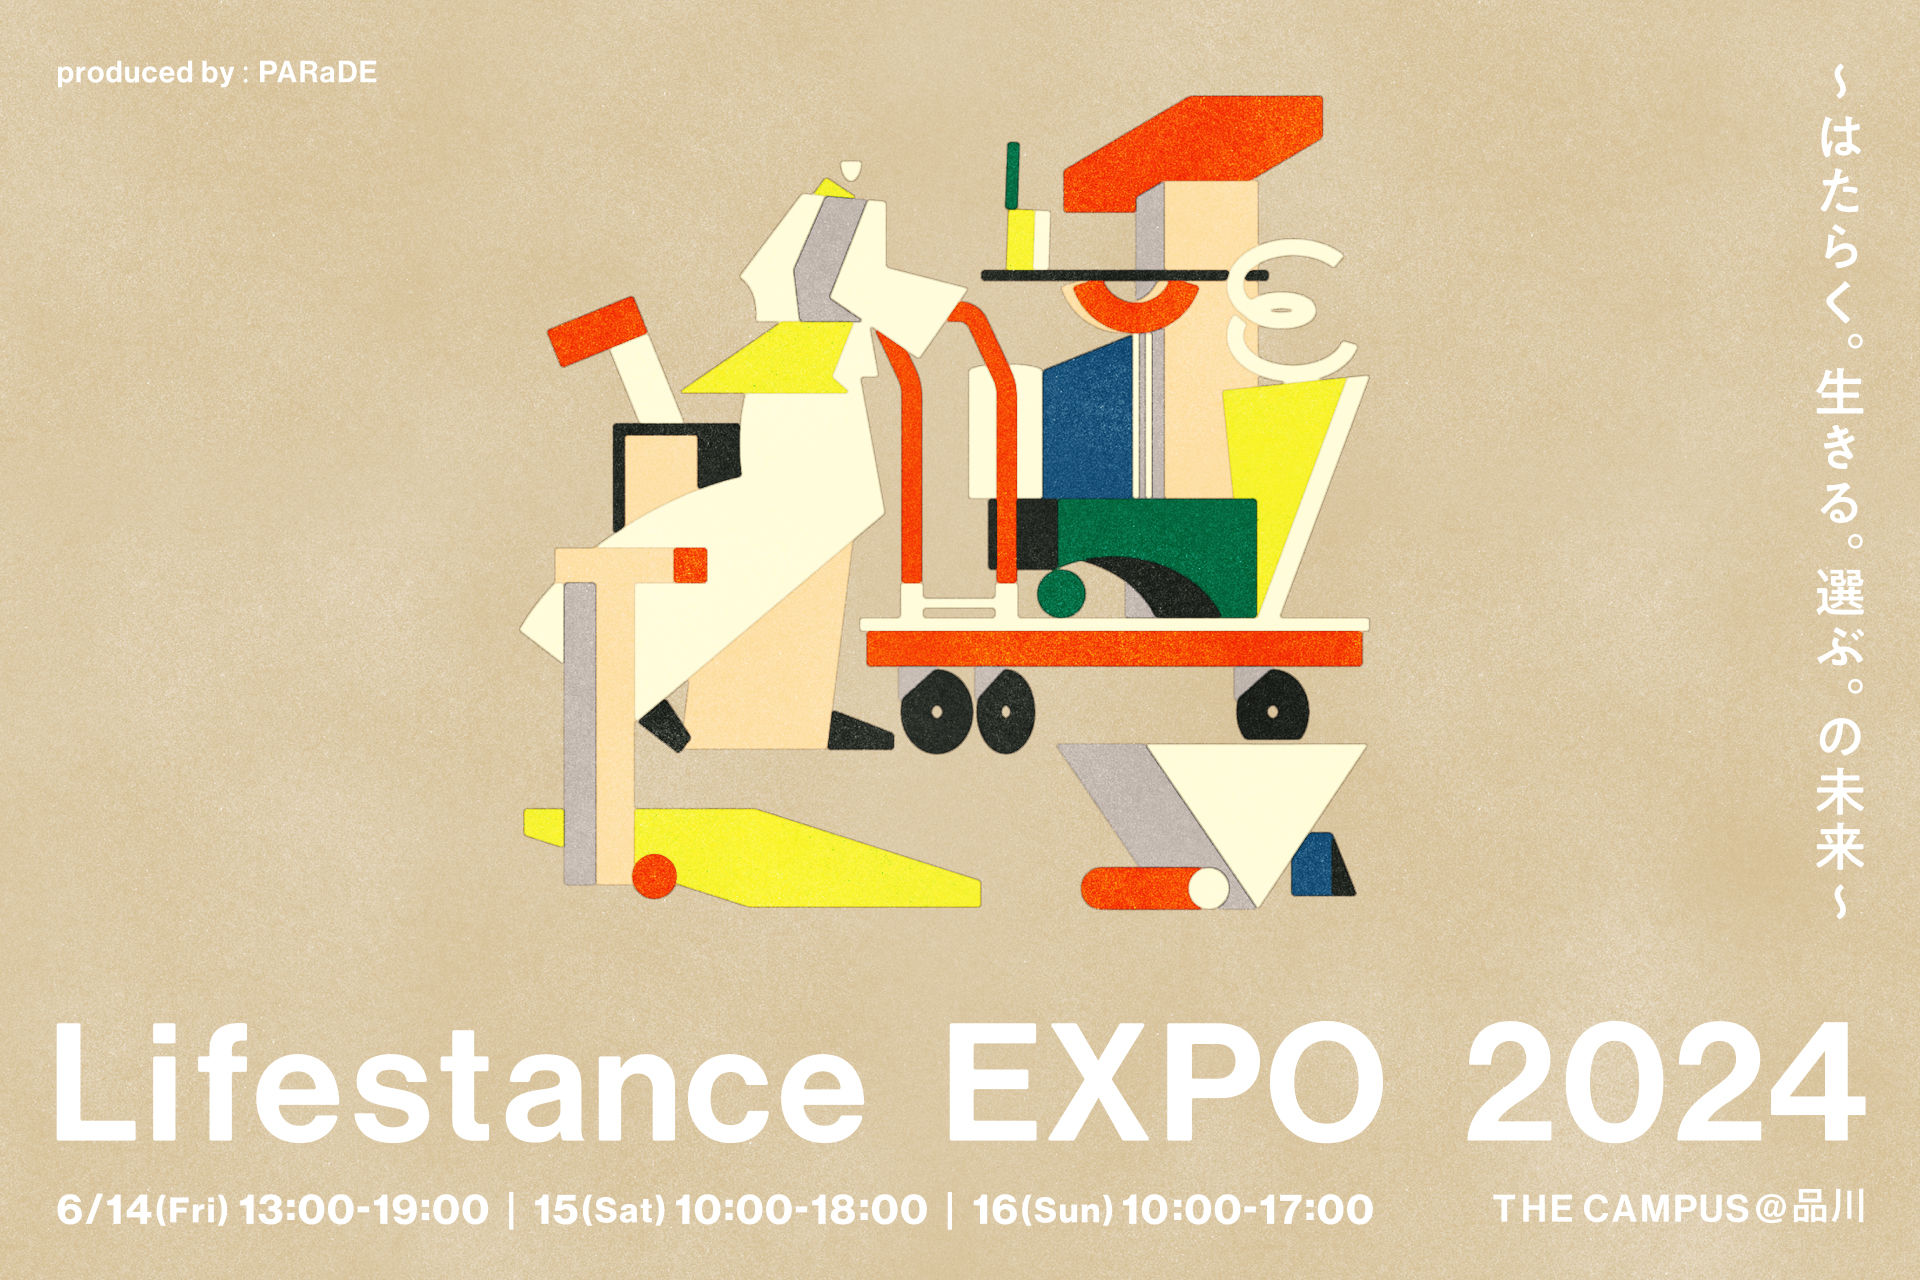 「PARaDE」によるイベント「Lifestance EXPO 2024」にイベントパートナーとして参画いたします。